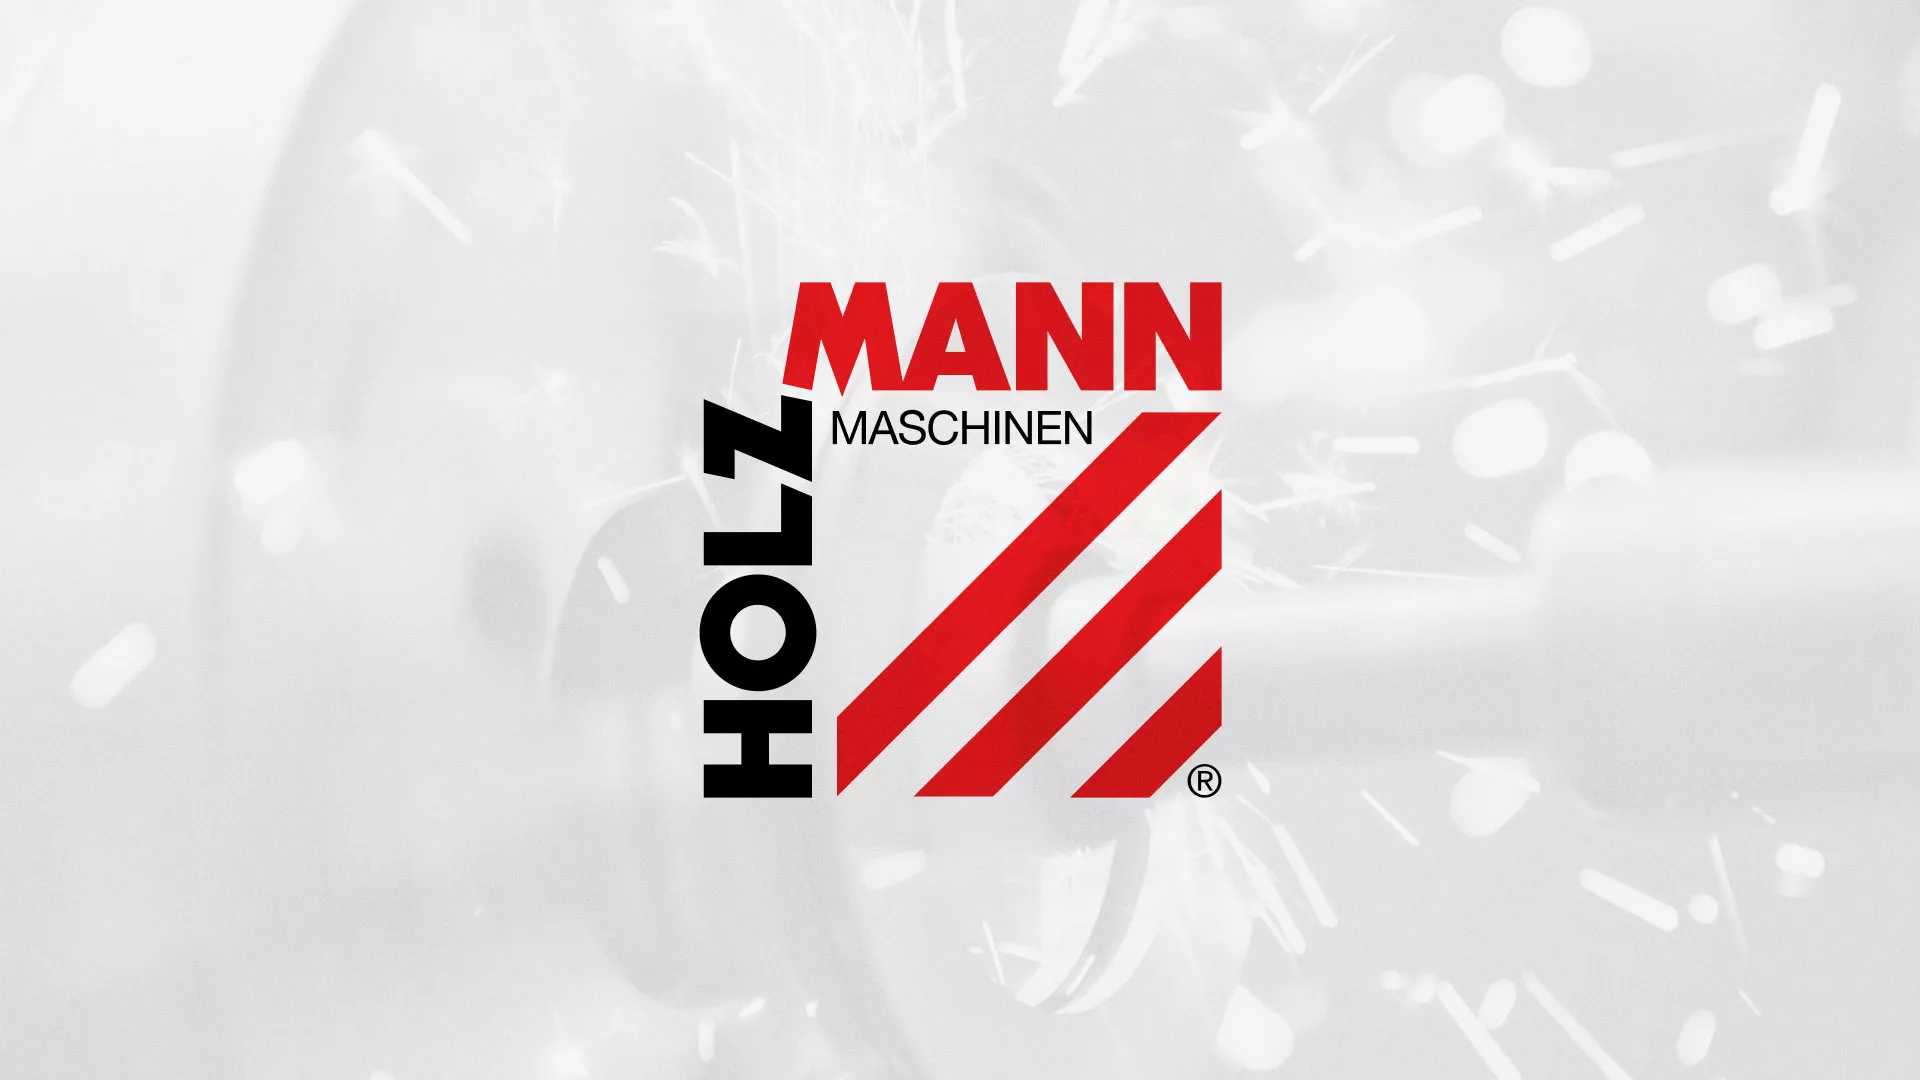 Создание сайта компании «HOLZMANN Maschinen GmbH» в Бологом